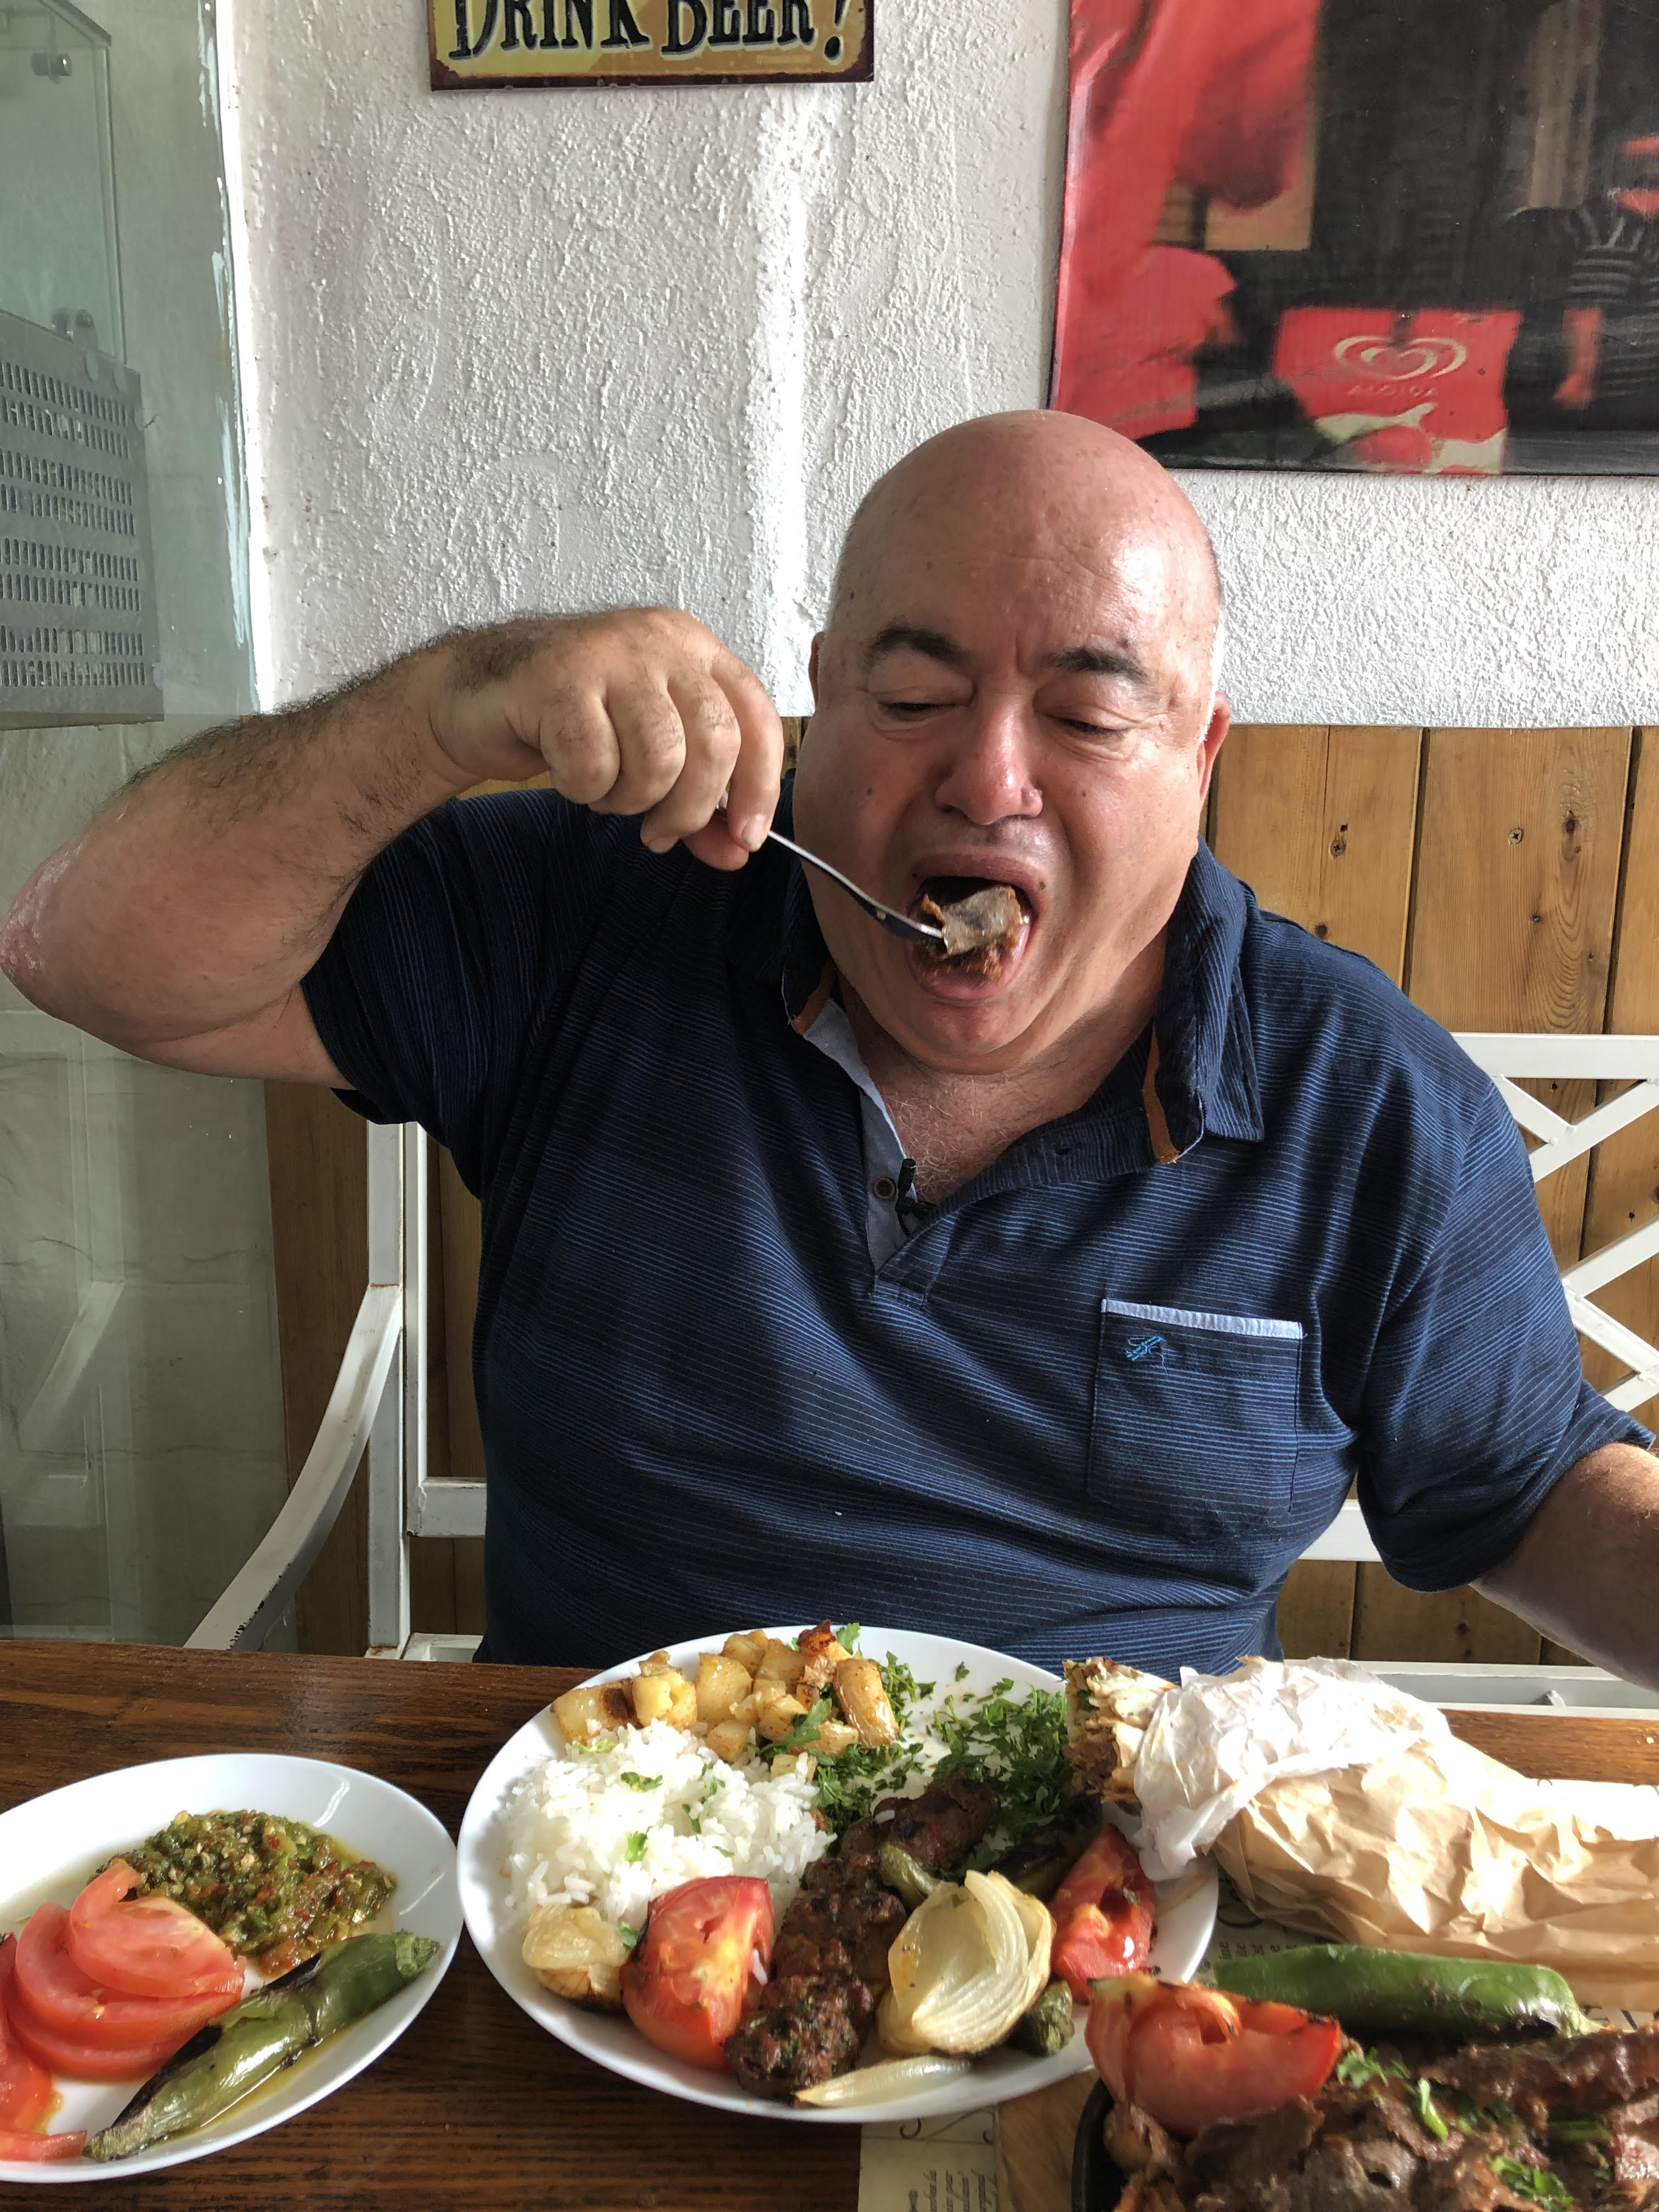 דוקטור שקשוקה זולל אוכל רחוב טורקי (צילום: תיקי גולן)